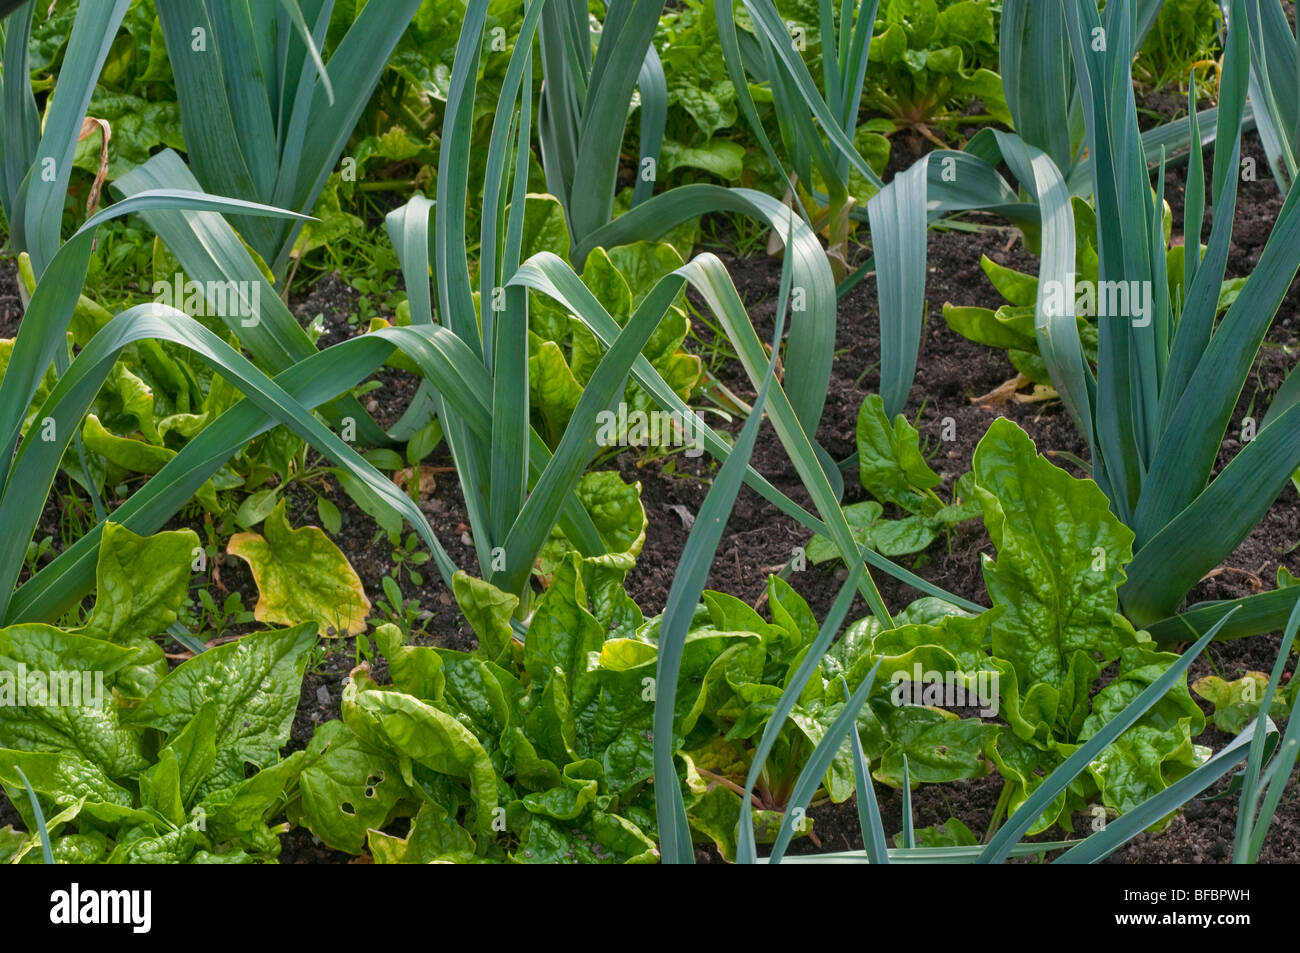 Espinacas creciendo entre las plantas de puerro Foto de stock